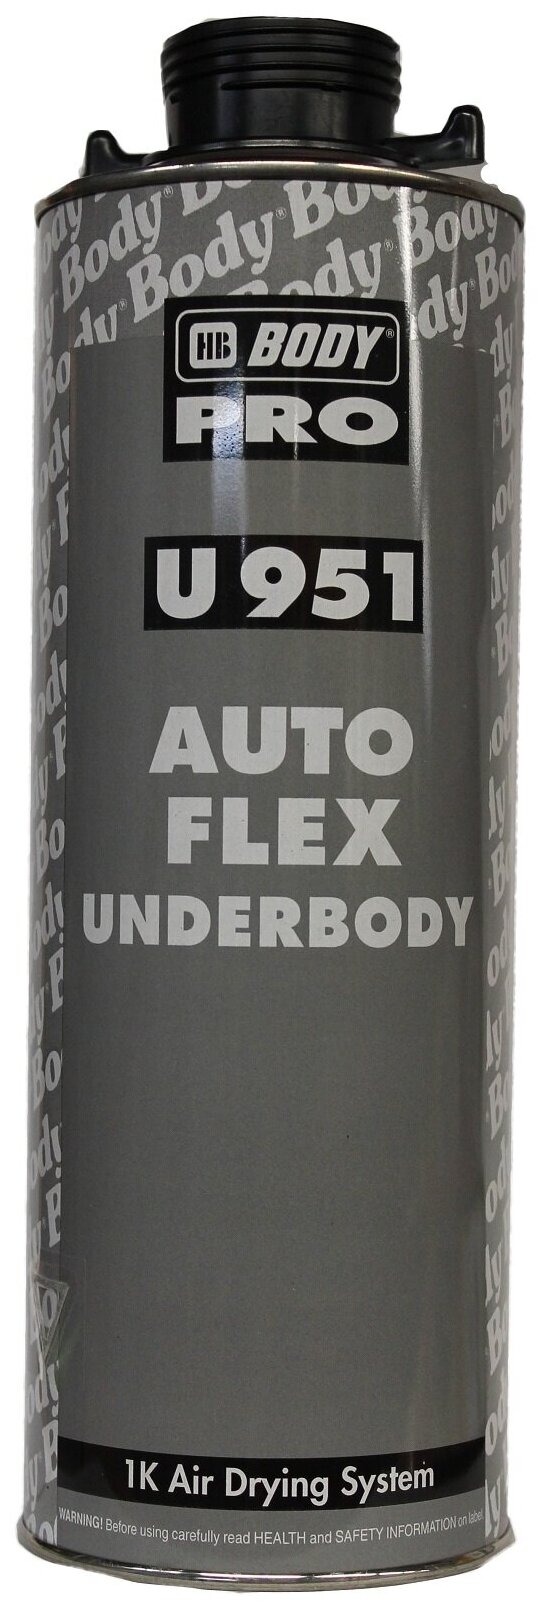 Антигравий на основе каучука черный под пистолет (HB BODY PRO 951 Autoflex) 1л